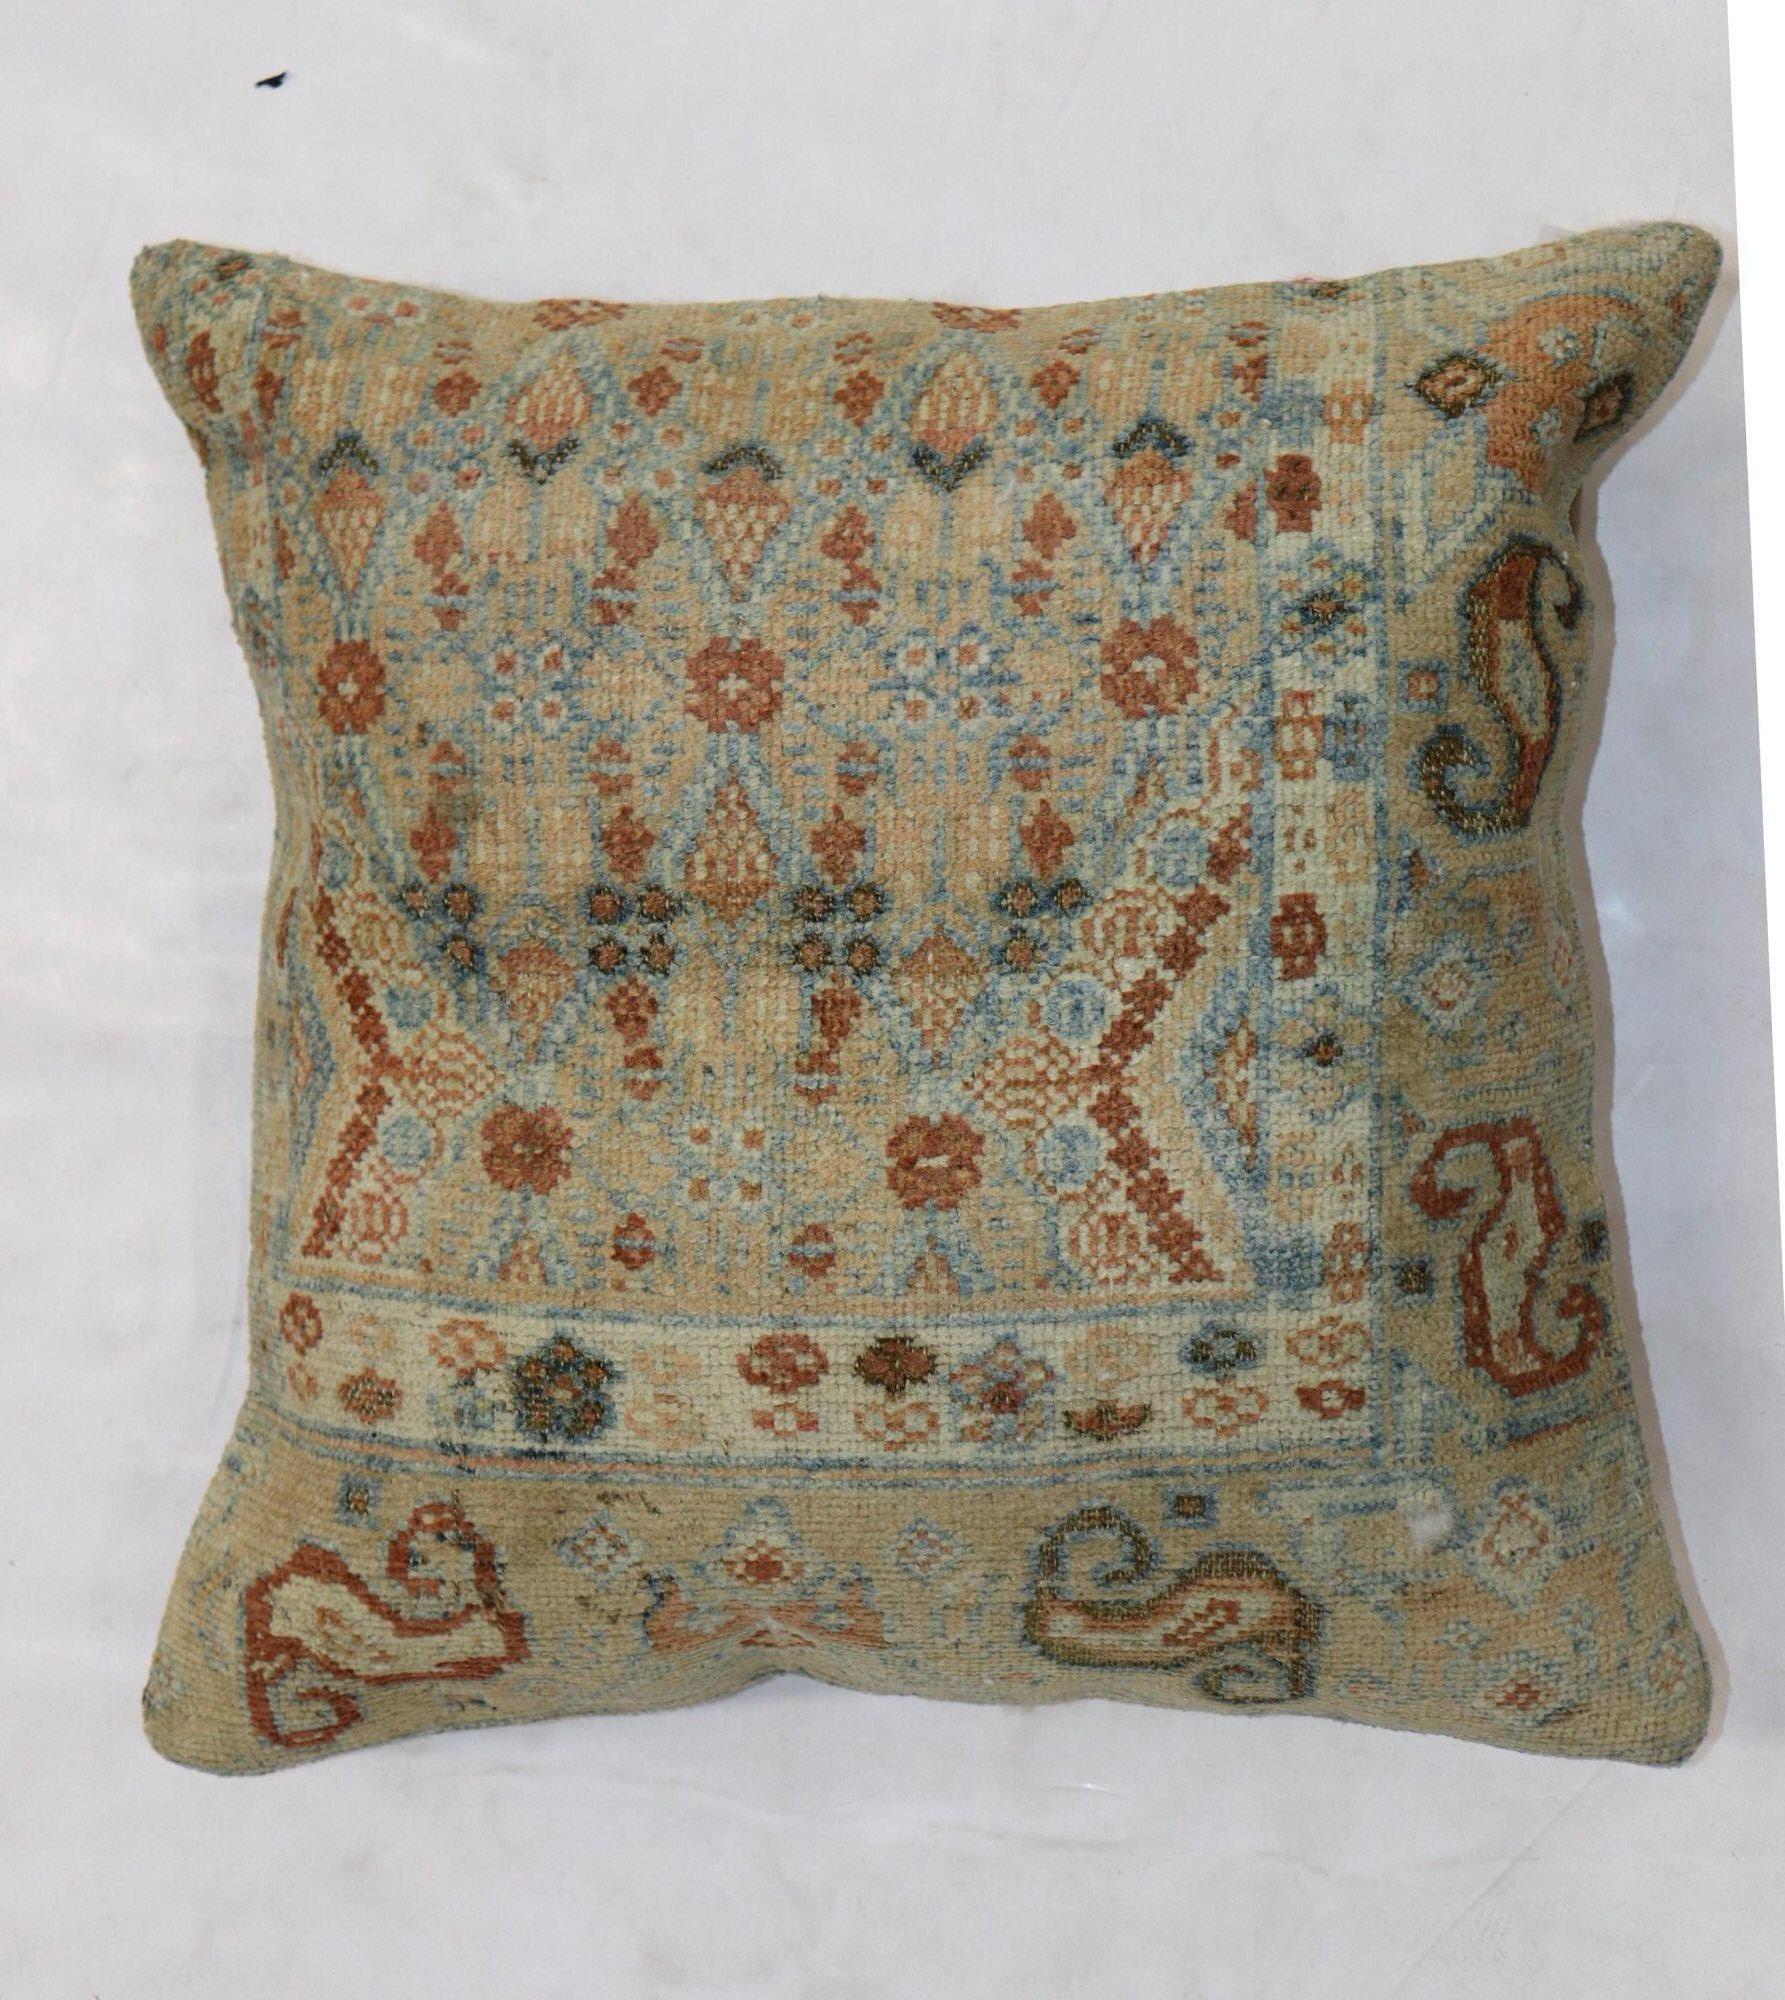 Großes quadratisches Kissen aus einem persischen Serab-Teppich aus dem frühen 20. Jahrhundert. Mit Reißverschluss zu schließen, mit Poly-Fill-Einsatz

Maße: 20